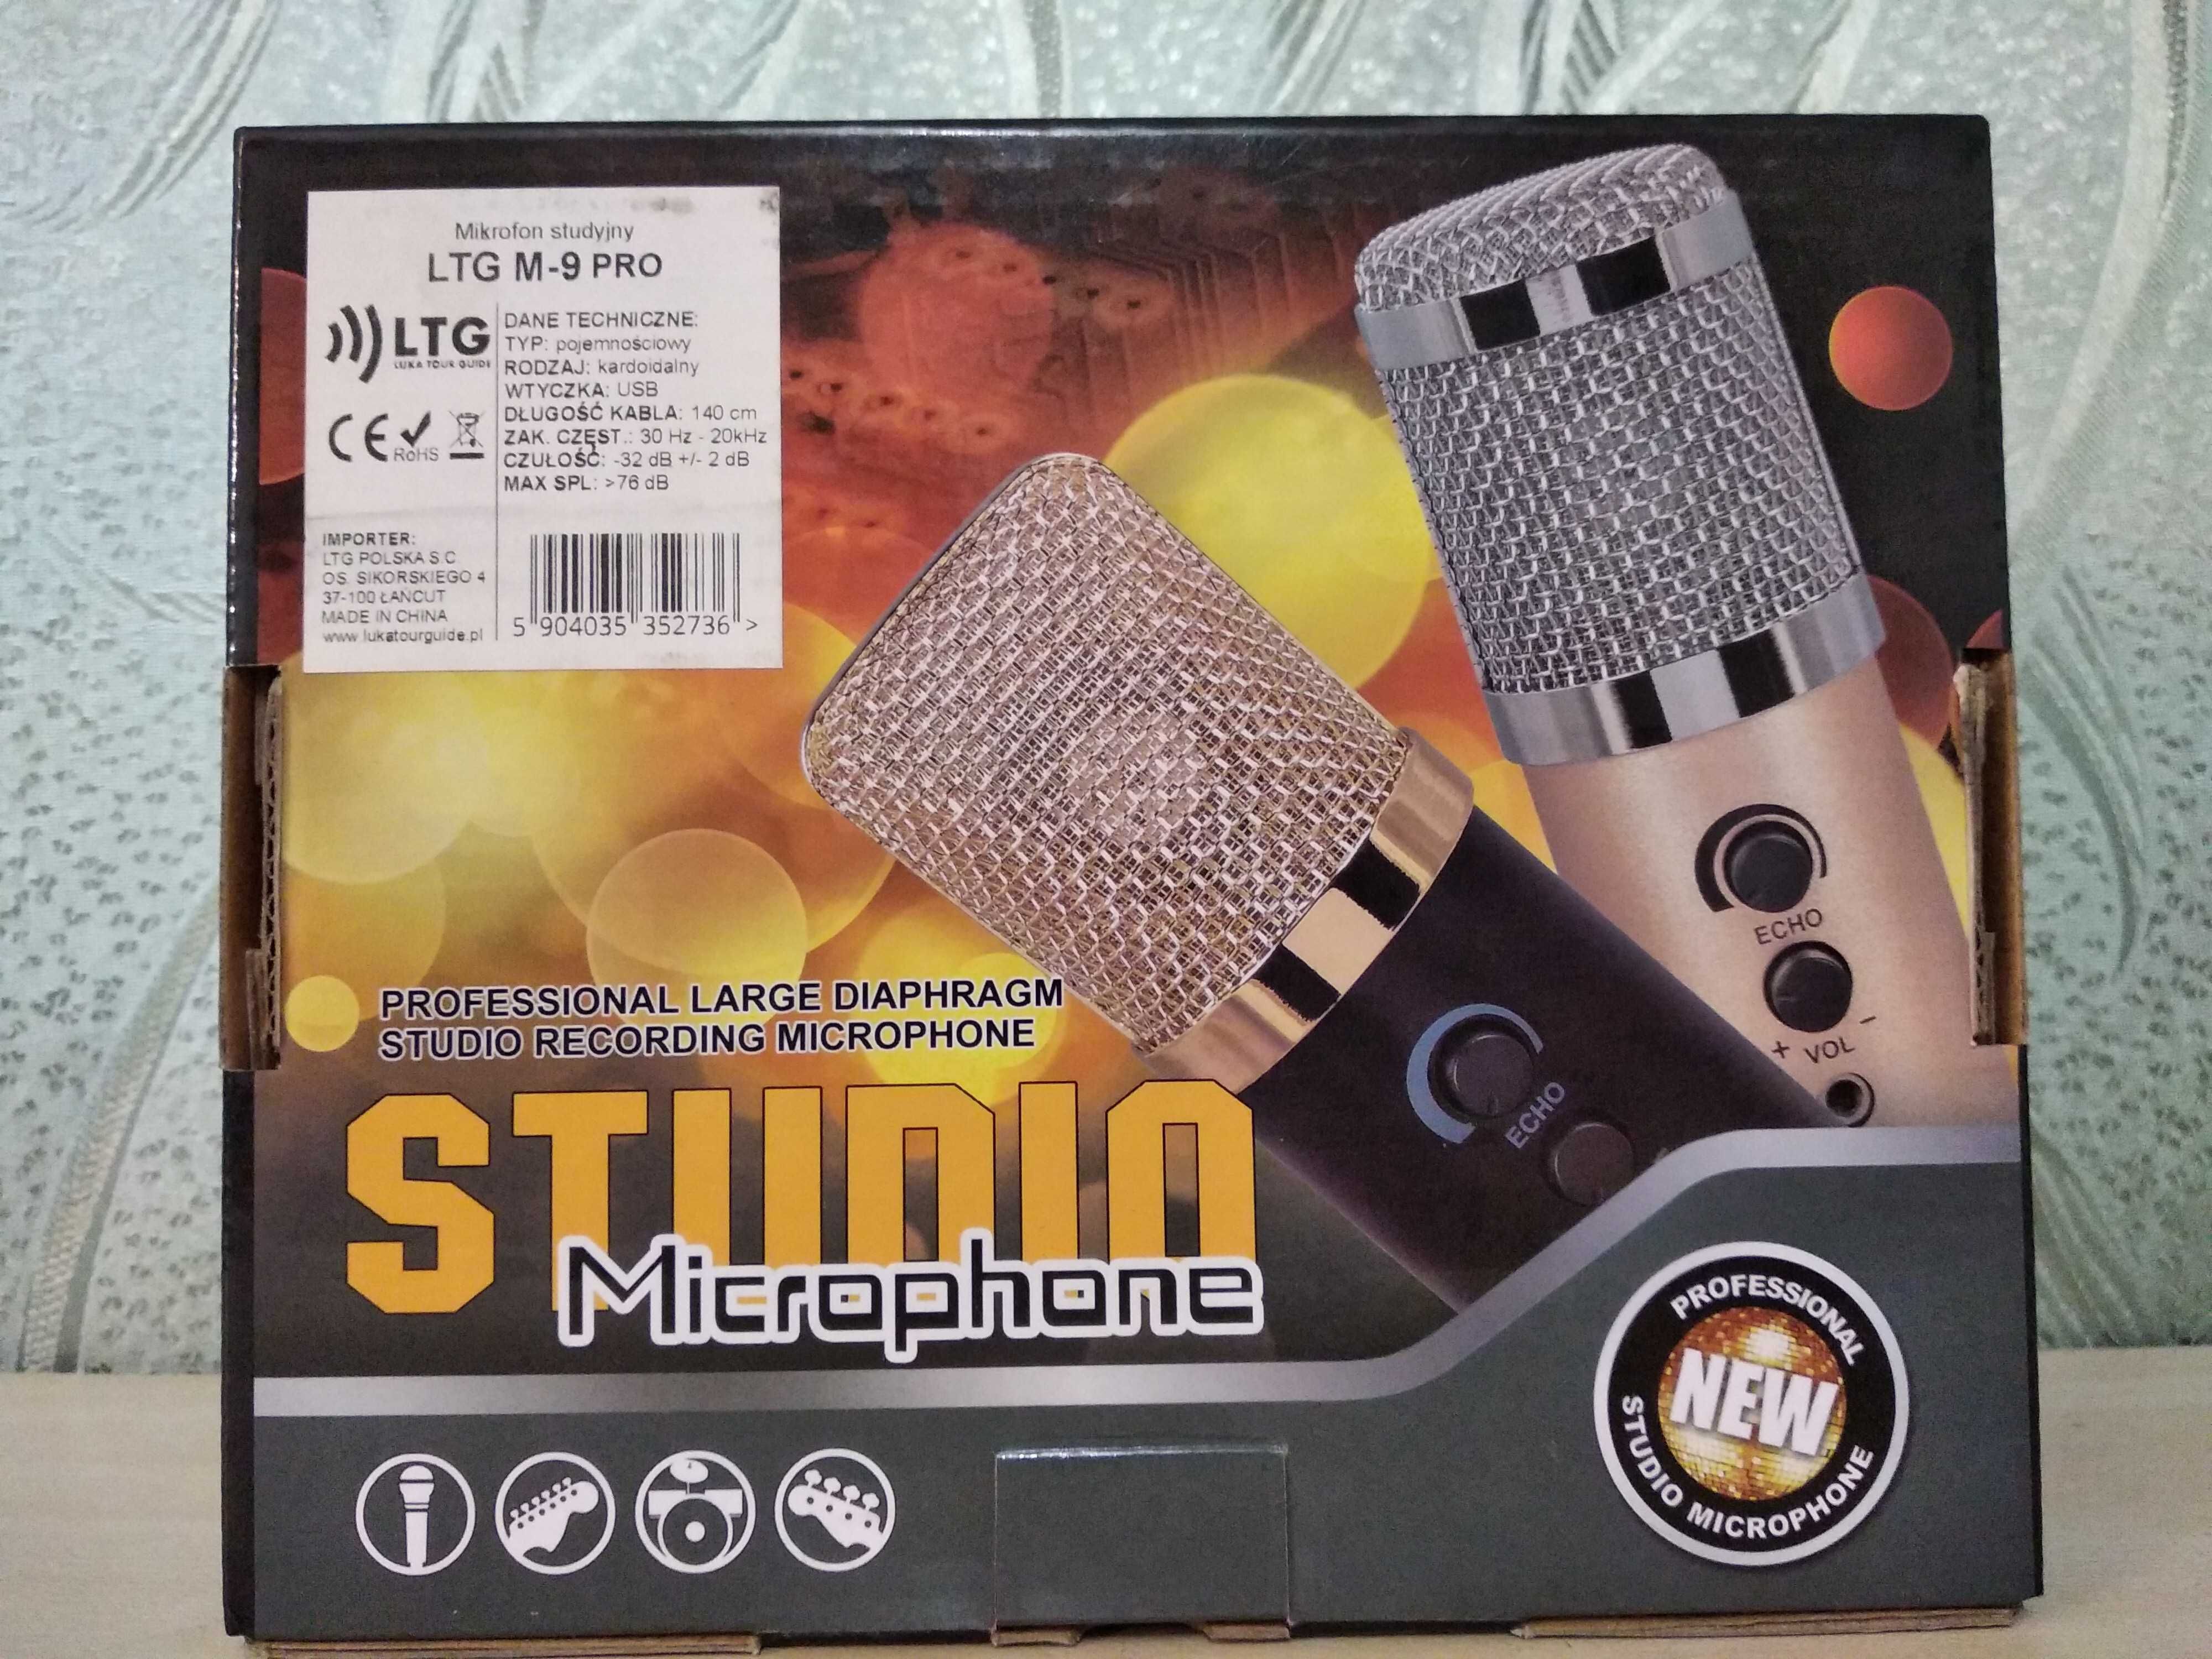 Mikrofon studyjny LTG M-9 PRO